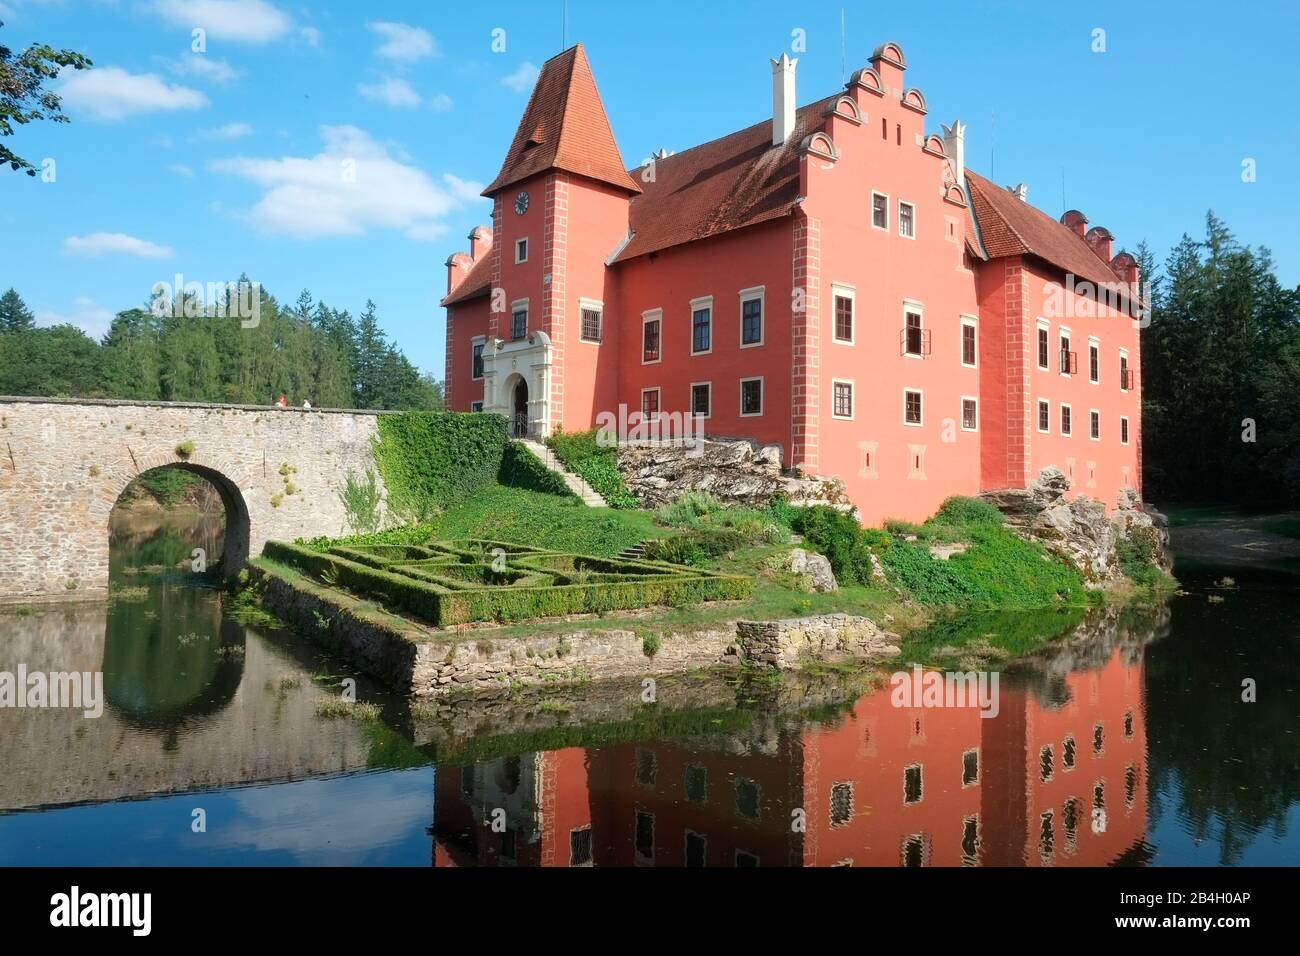 Cervena Lhota Chateau, Repubblica Ceca. La casa estiva ricostruita dal forte gotico nel 16th secolo è stato un luogo di divertimento, celebrazioni e tempo libero. Foto Stock